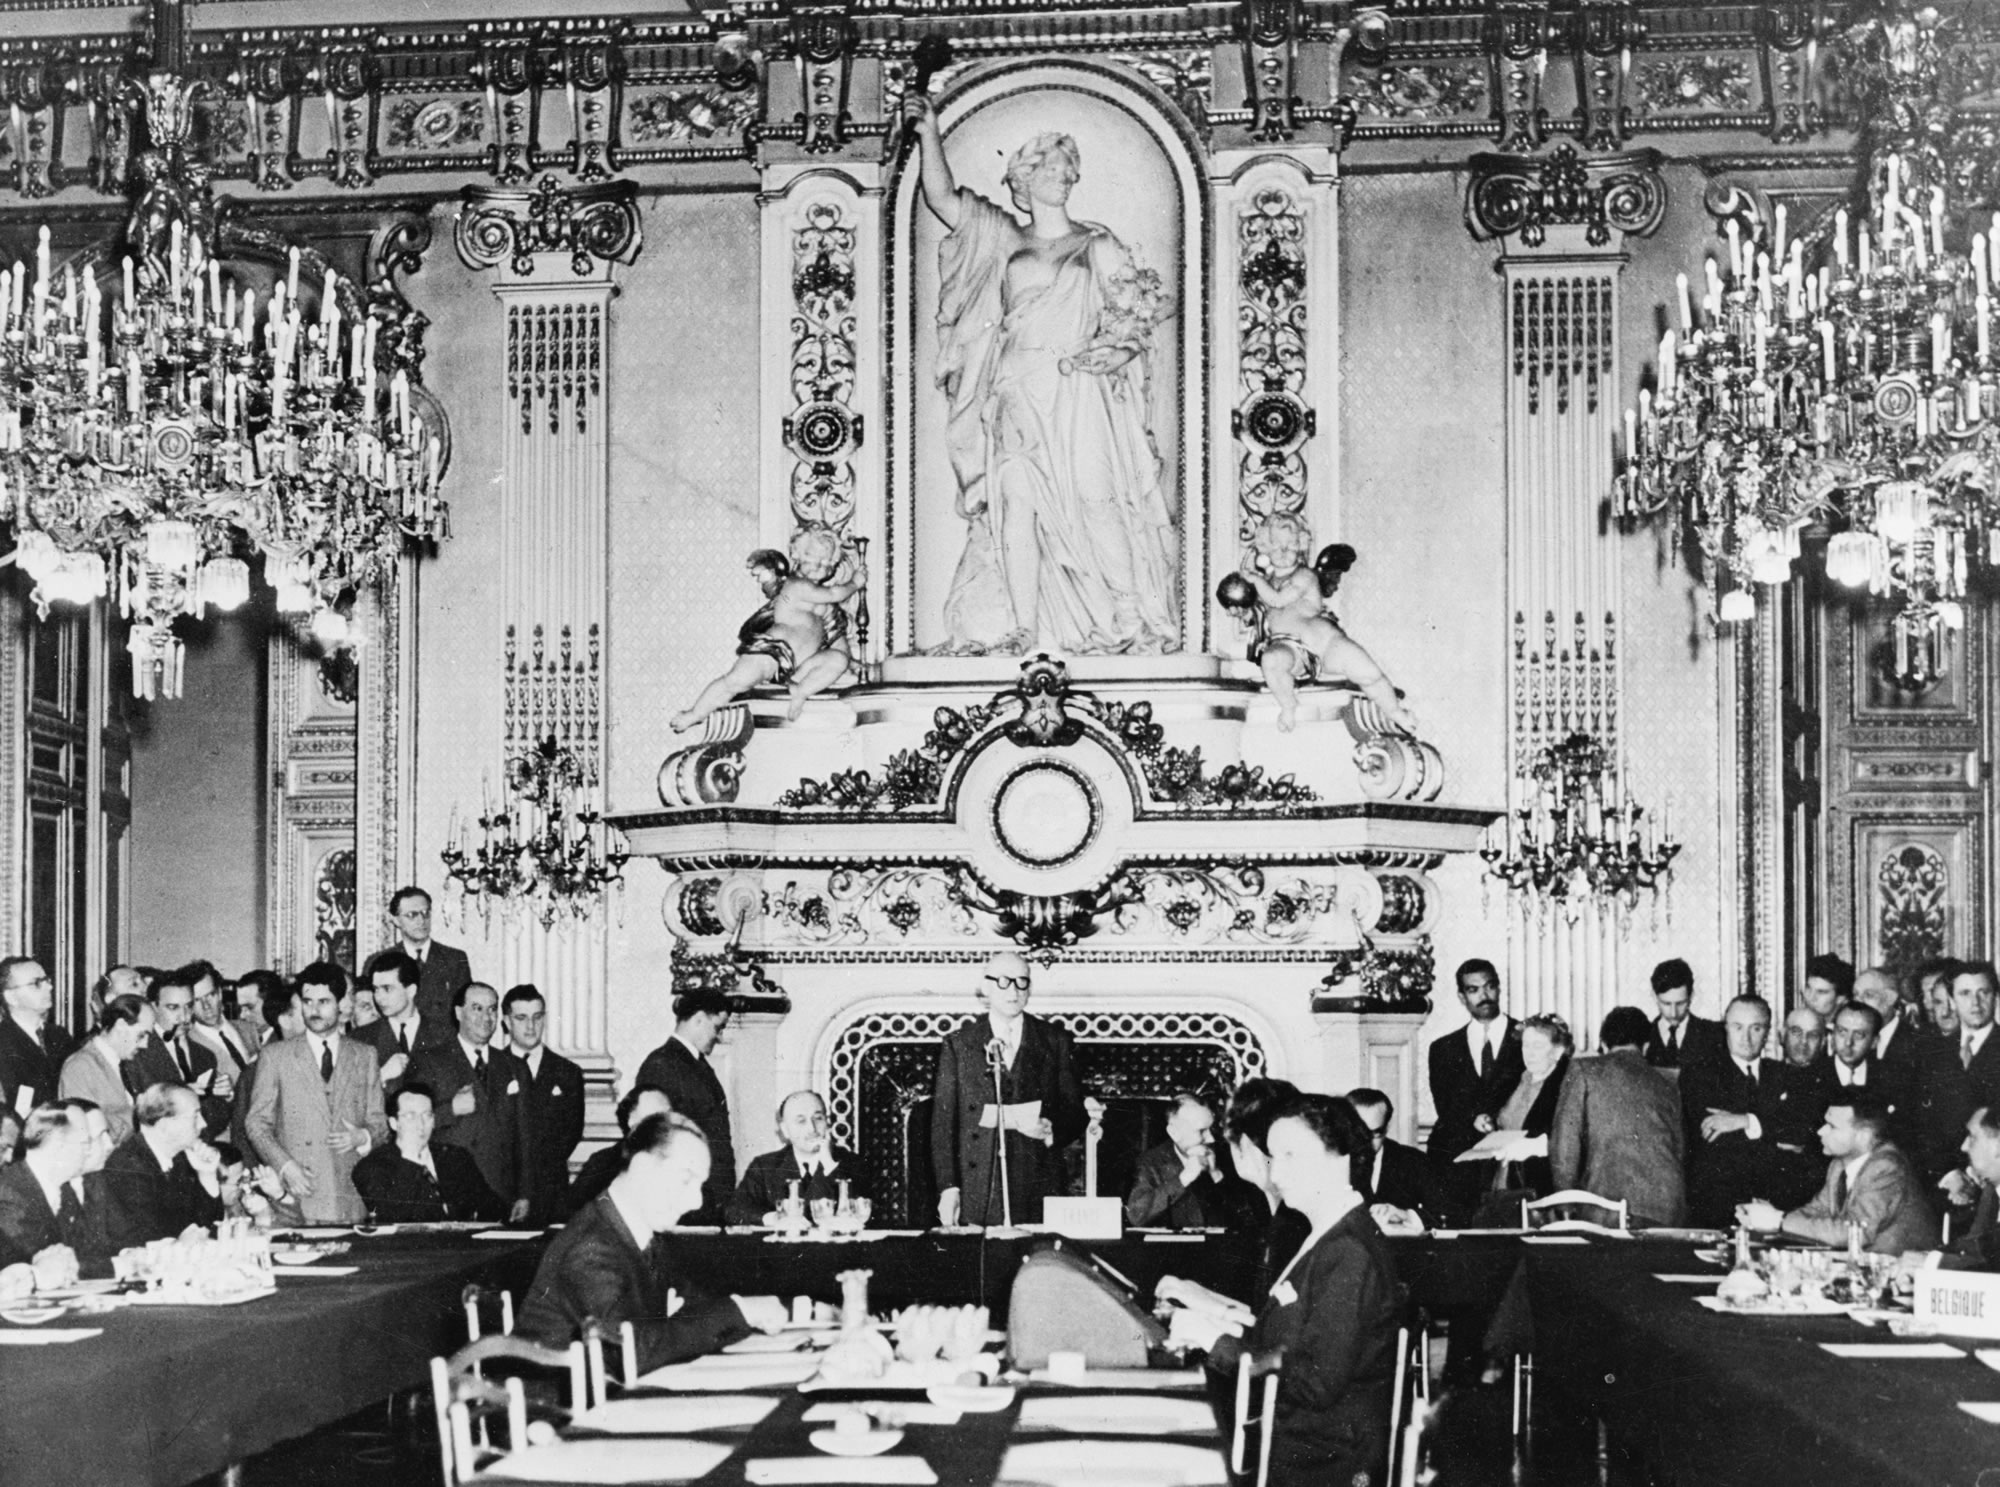 Schumanova deklaracija 9. maja 1950 v Salon de l’Horloge francoskega zunanjega ministrstva na Quai d’Orsay v Parizu: francoski zunanji minister Robert Schuman je predlagal združitev evropske proizvodnje premoga in jekla v Evropsko skupnost za premog in jeklo. Tako naj bi bila vojna med sodelujočimi državami ne samo nesprejemljiva, ampak materialno neizvedljiva.